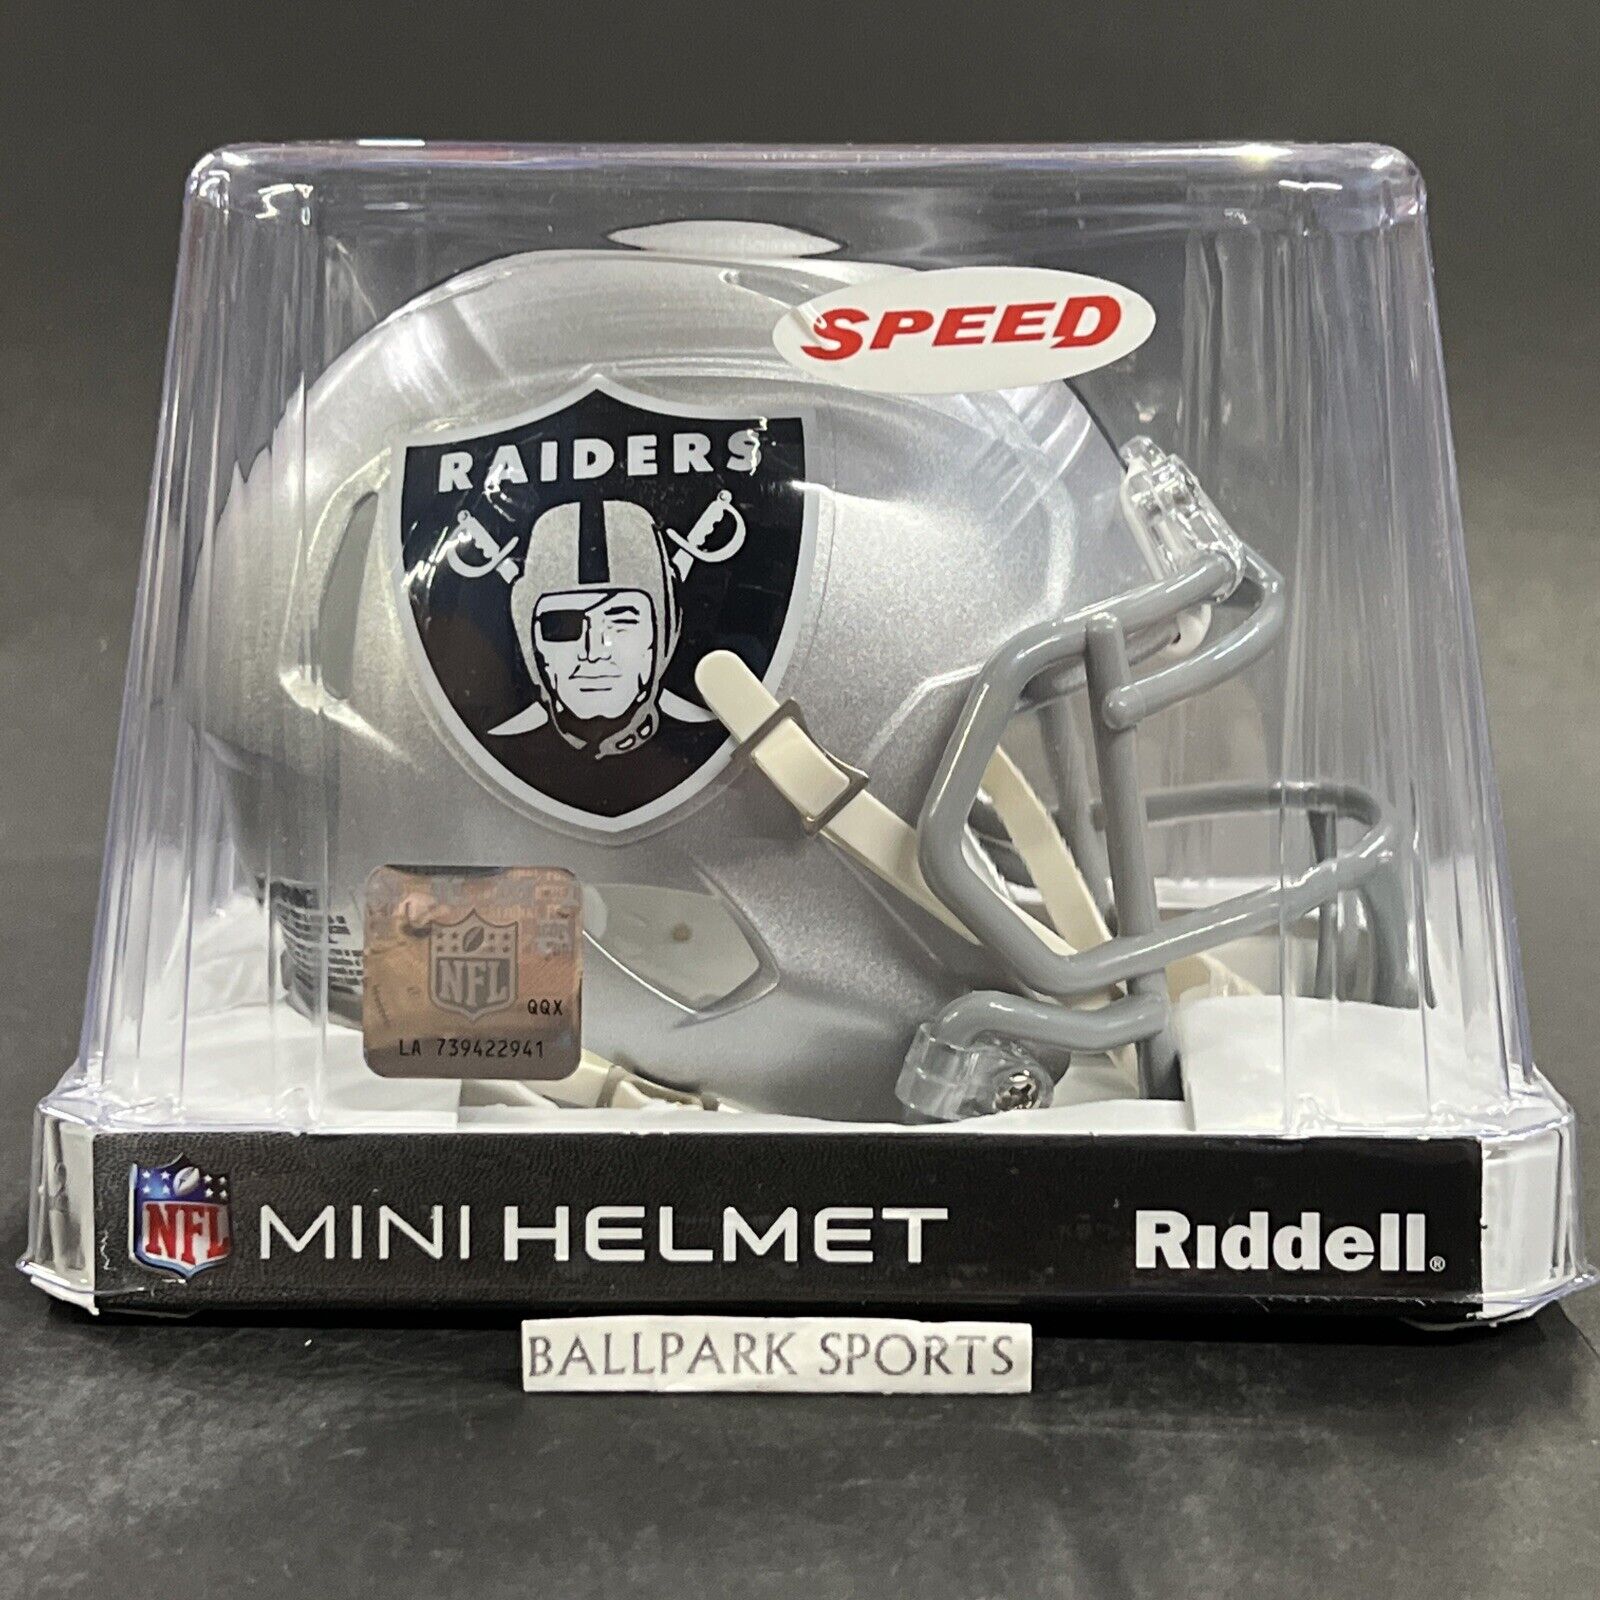 Las Vegas Raiders Speed Mini Helmet Riddell NFL Licensed Brand New